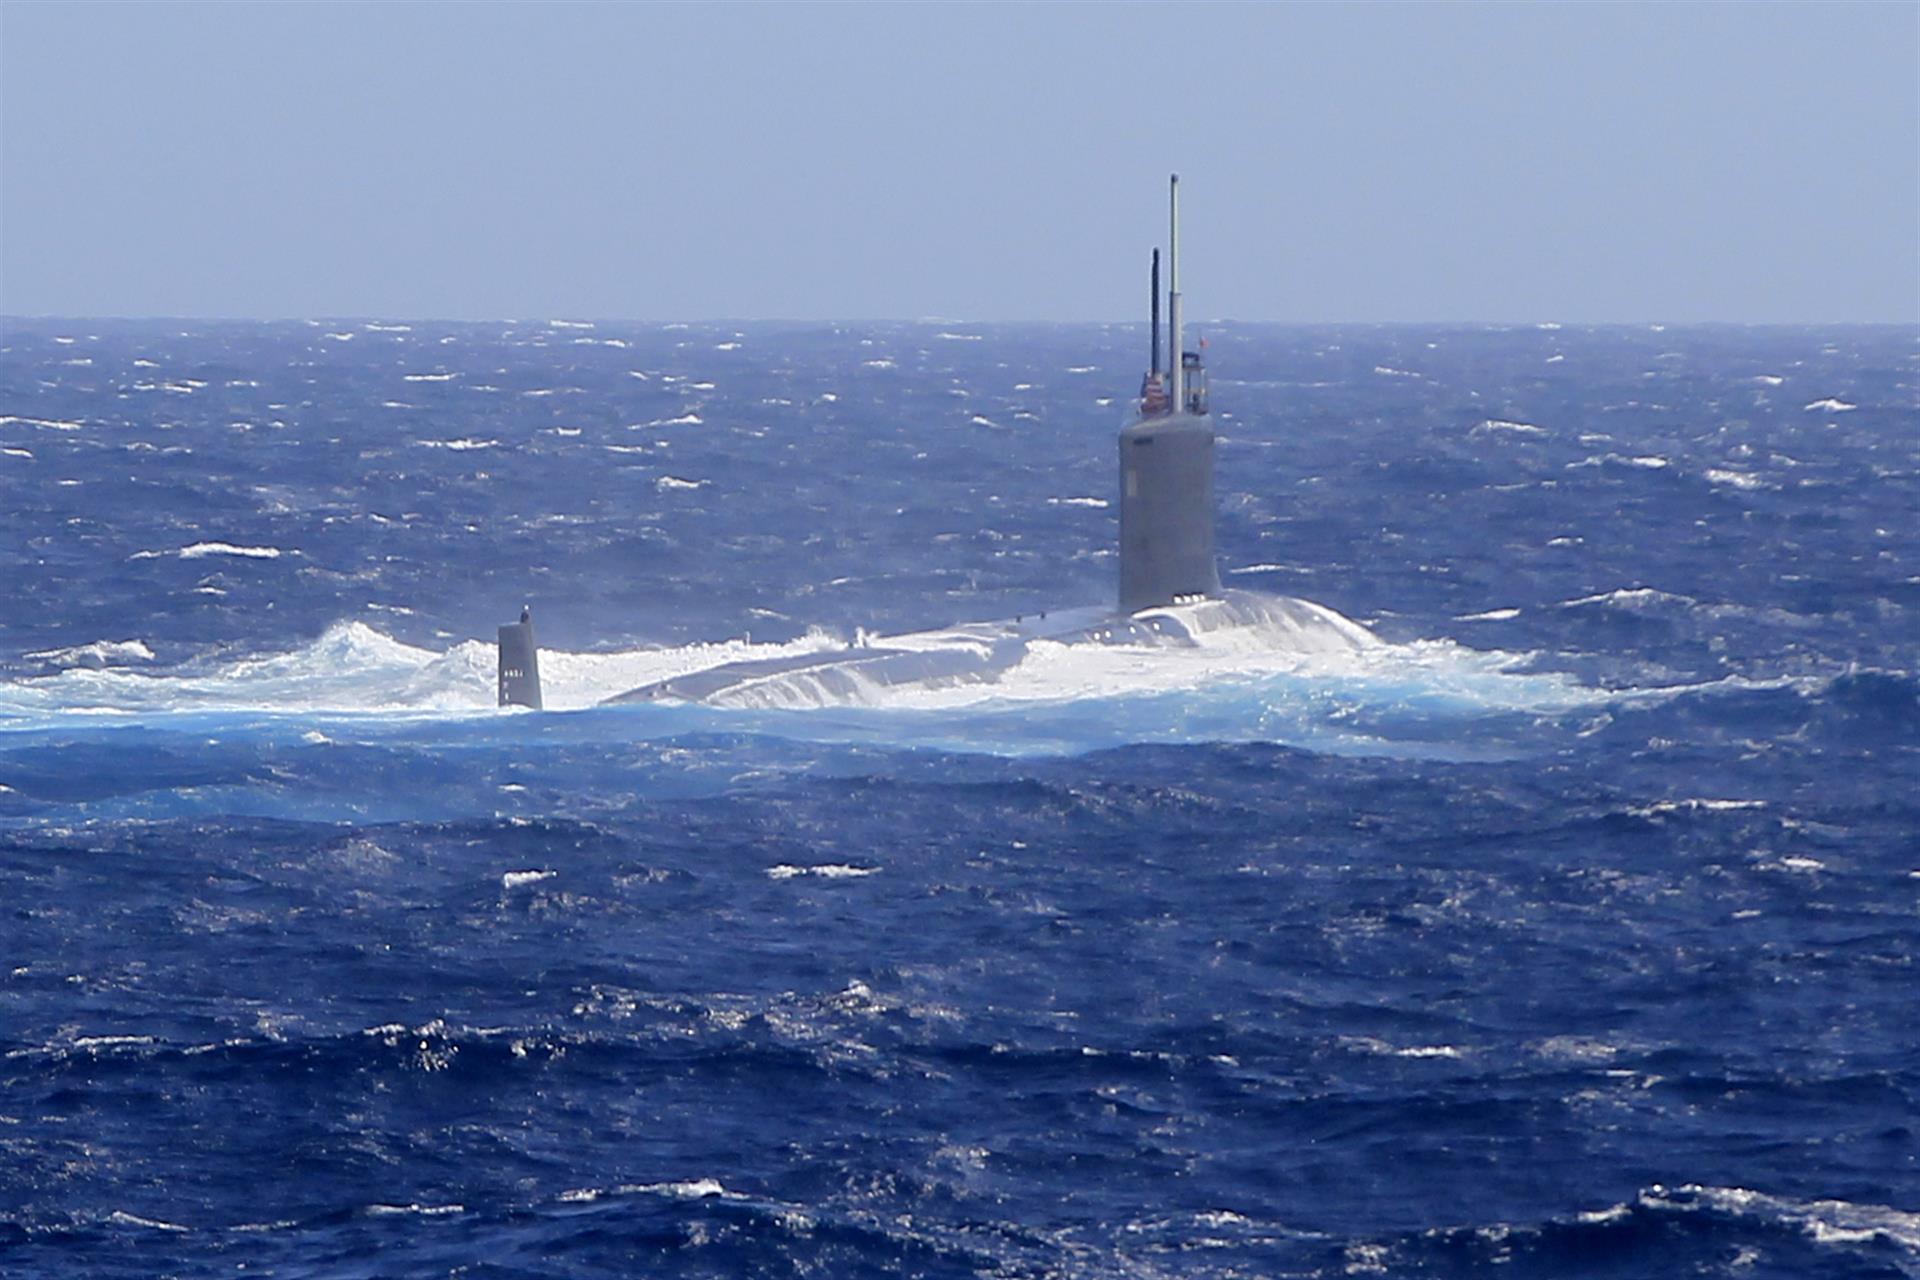 Australia construirá base de submarinos nucleares para defender el Indopacífico de China